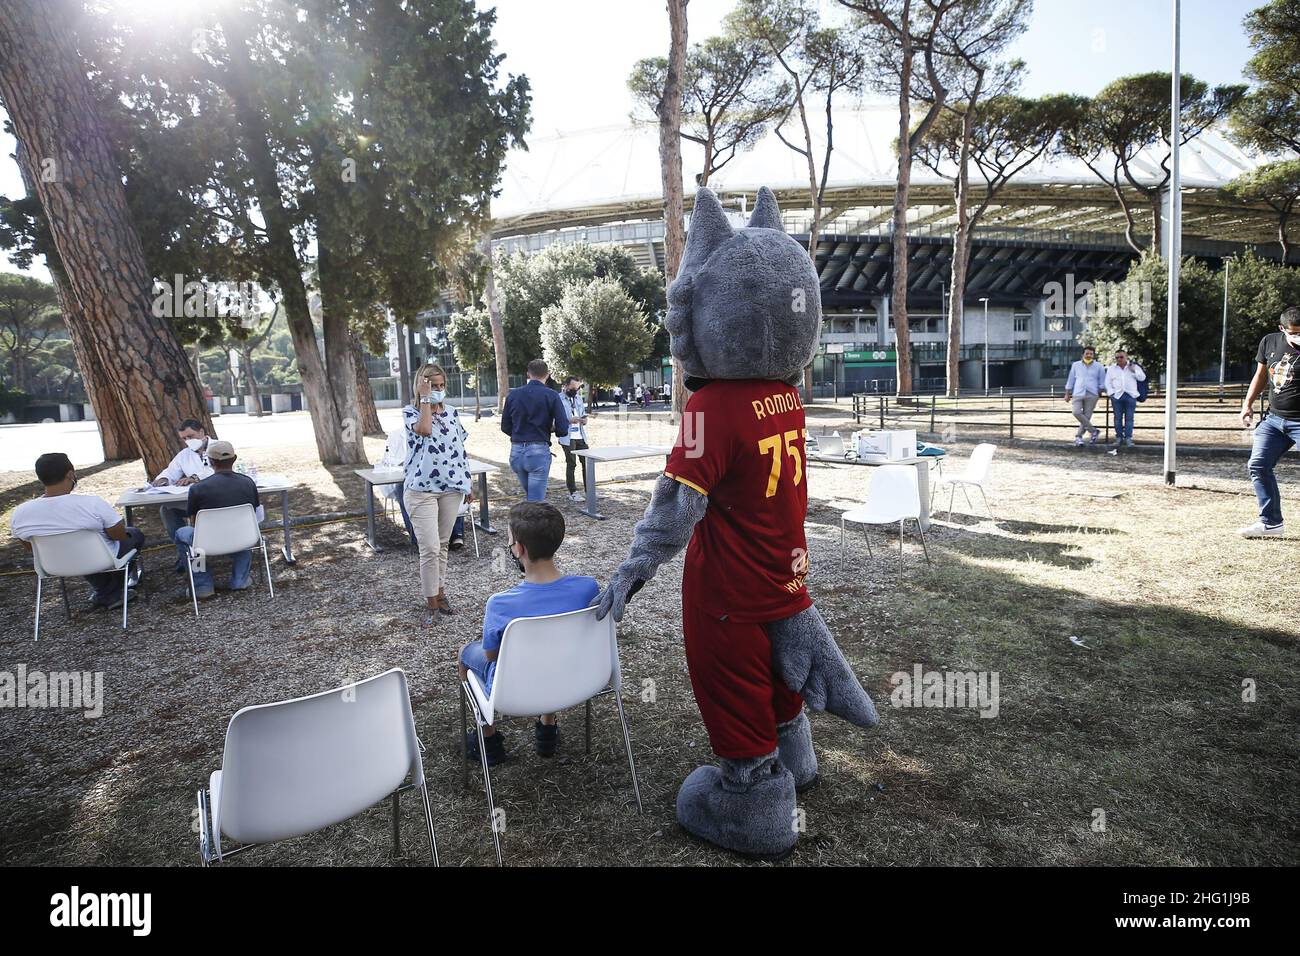 Cecilia Fabiano/ LaPresse 22 de septiembre de 2021 Roma (Italia) Noticias : Vacunación Covid frente al estadio Olimpico para los aficionados romaníes en el Pic : el sitio de vacunación Foto de stock